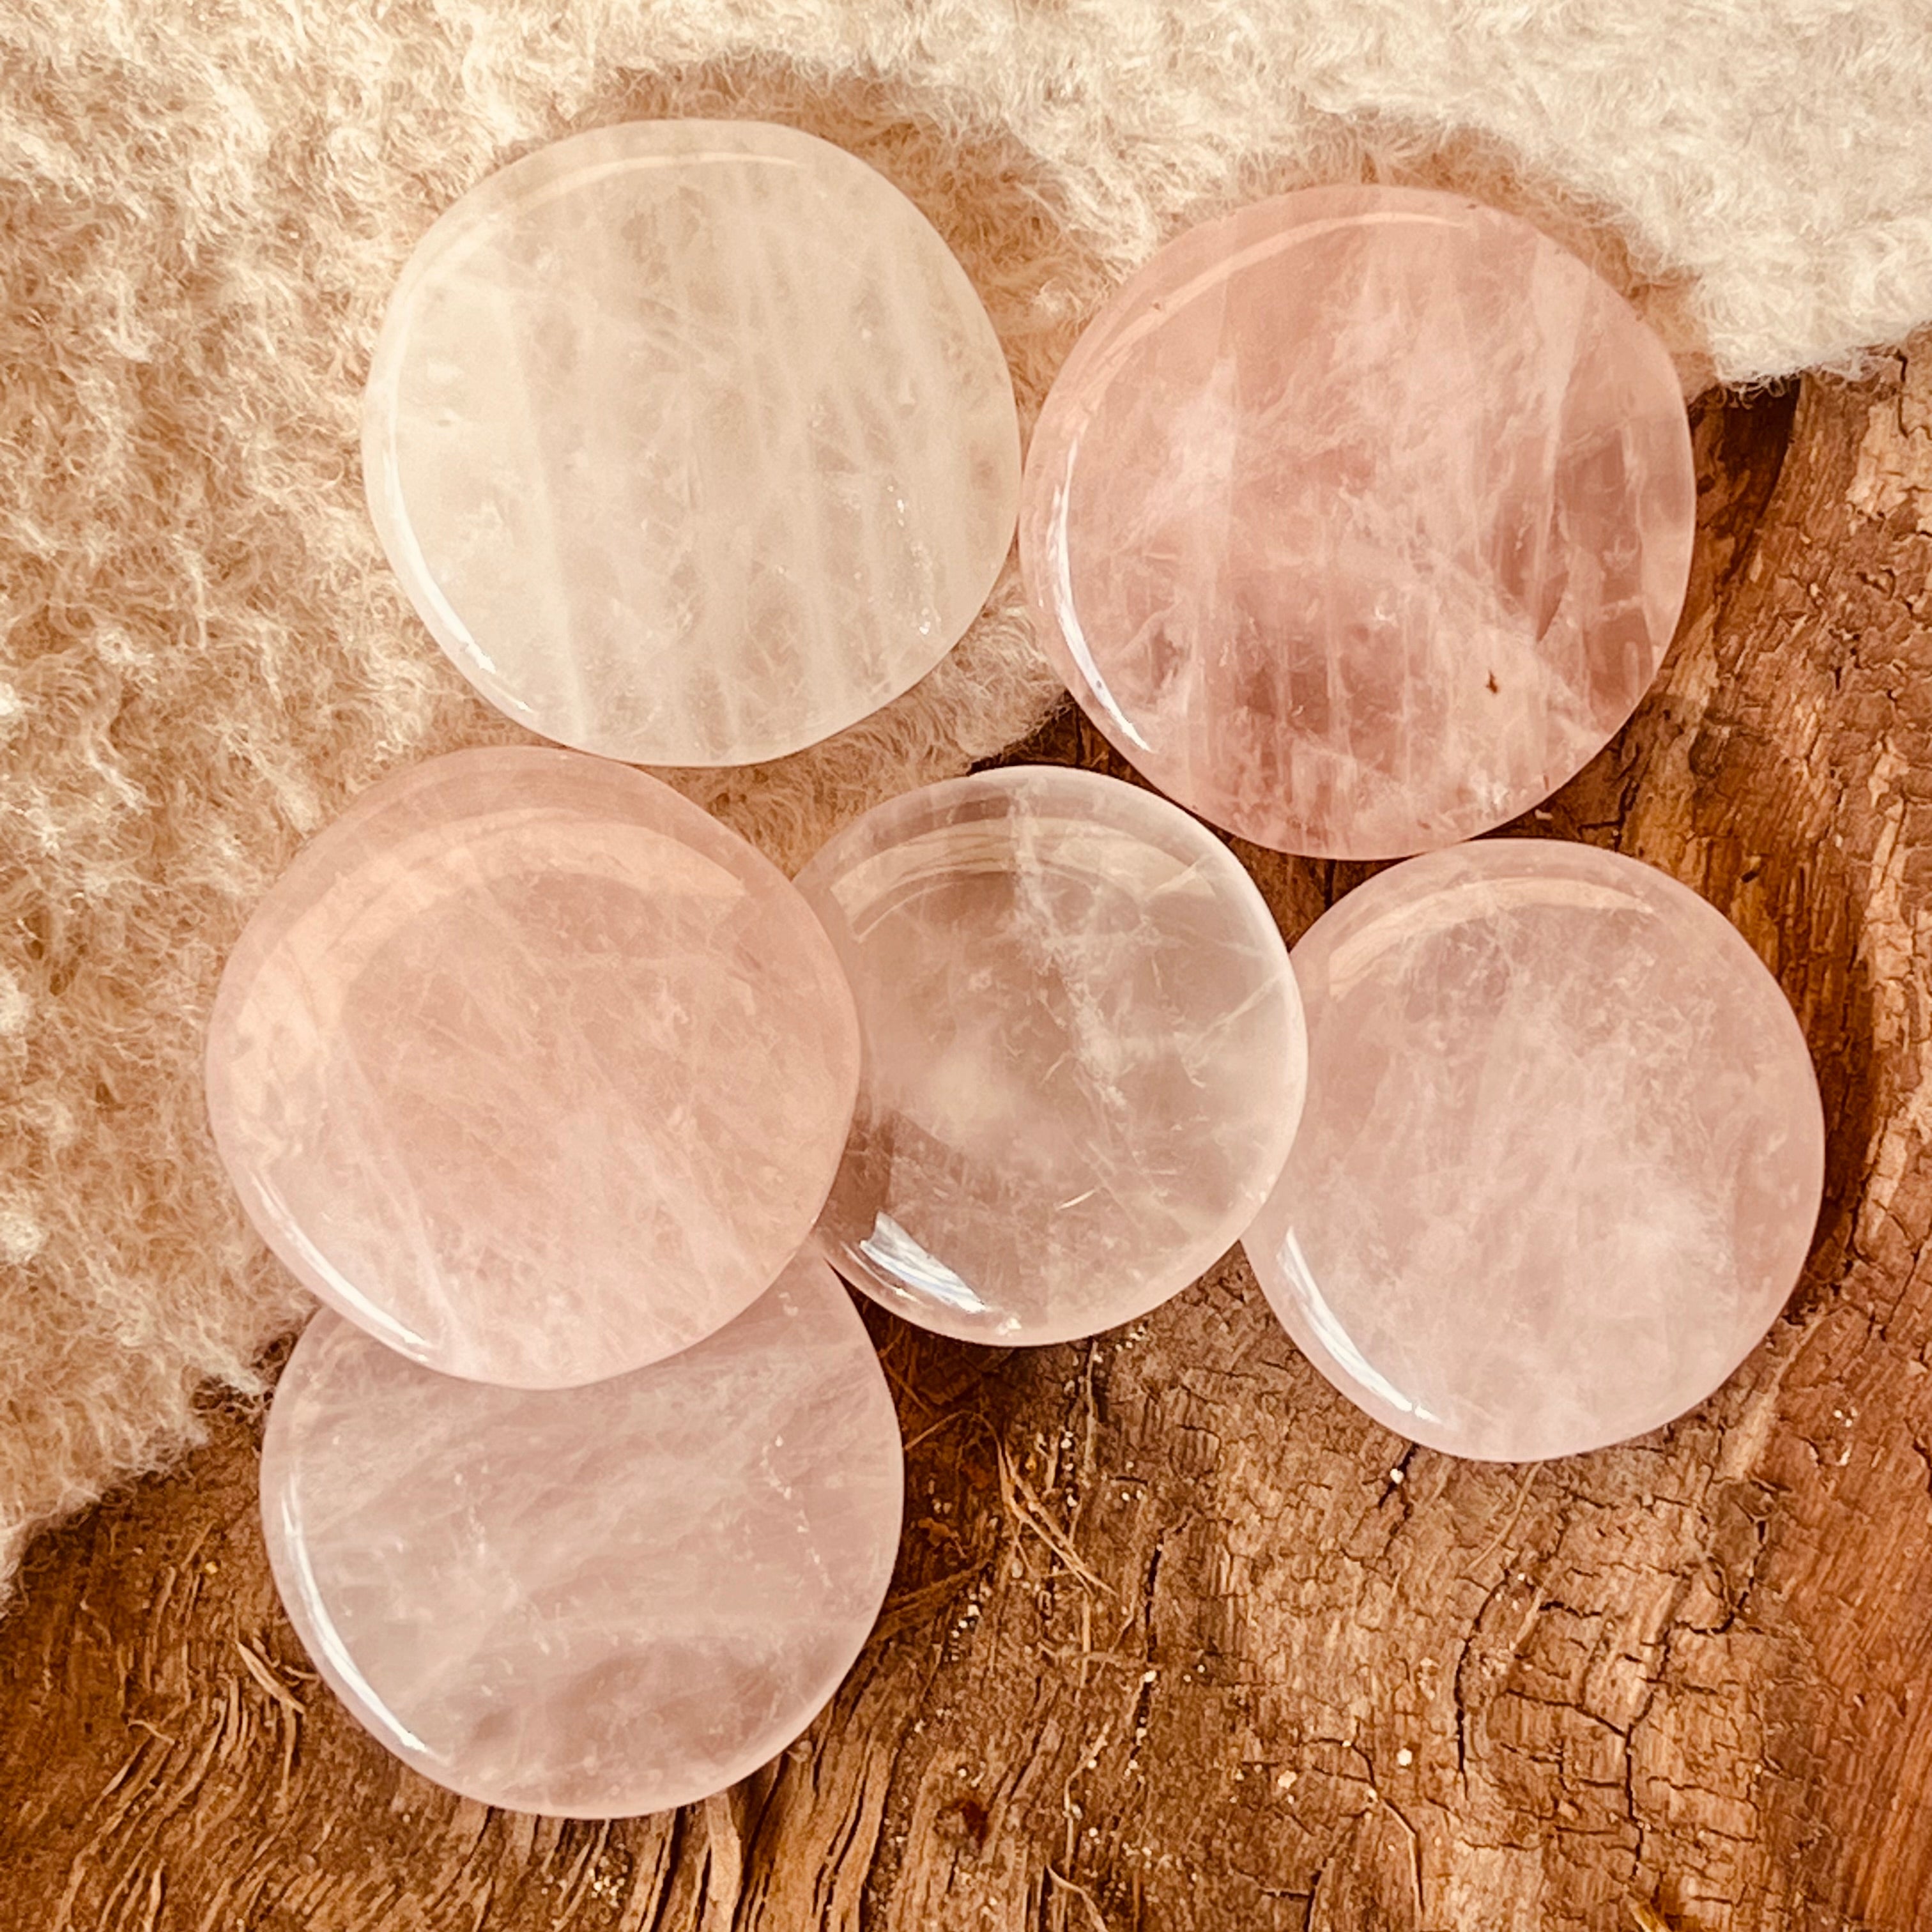 Palm stone cuart roz 4-5 cm